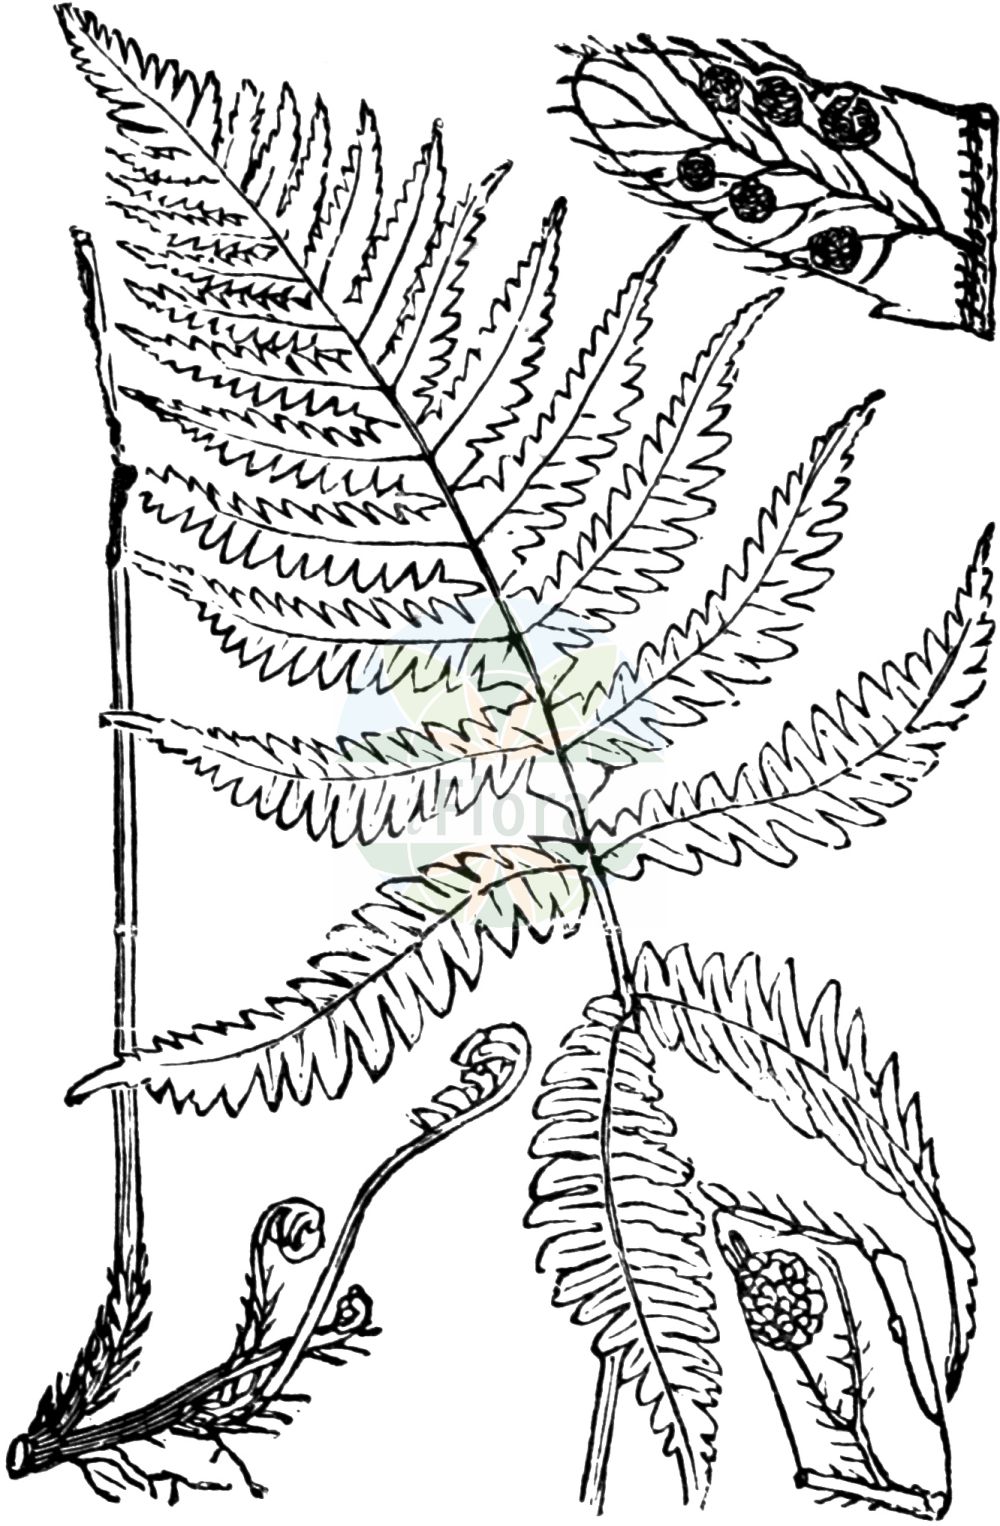 Historische Abbildung von Phegopteris connectilis (Buchenfarn - Beech Fern). Das Bild zeigt Blatt, Bluete, Frucht und Same. ---- Historical Drawing of Phegopteris connectilis (Buchenfarn - Beech Fern). The image is showing leaf, flower, fruit and seed.(Phegopteris connectilis,Buchenfarn,Beech Fern,Dryopteris phegopteris,Lastrea phegopteris,Nephrodium phegopteris,Phegopteris connectilis,Phegopteris polypodioides,Phegopteris vulgaris,Polypodium connectile,Polypodium phegopteris,Thelypteris phegopteris,Buchenfarn,Beech Fern,Long Beechfern,Beech Polypody,Phegopteris,Buchenfarn,Thelypteridaceae,Sumpffarngewächse,Maiden Fern family,Blatt,Bluete,Frucht,Same,leaf,flower,fruit,seed,Fitch et al. (1880))